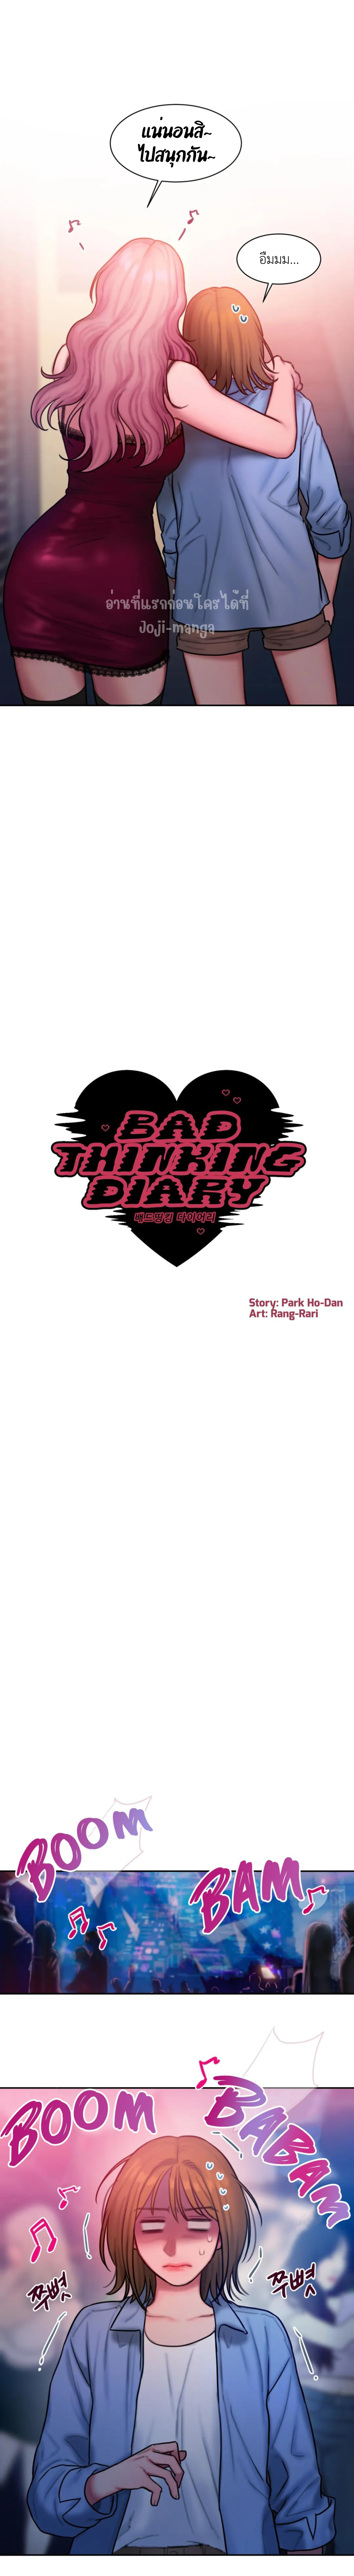 Bad Thinking Diary 26 (4)